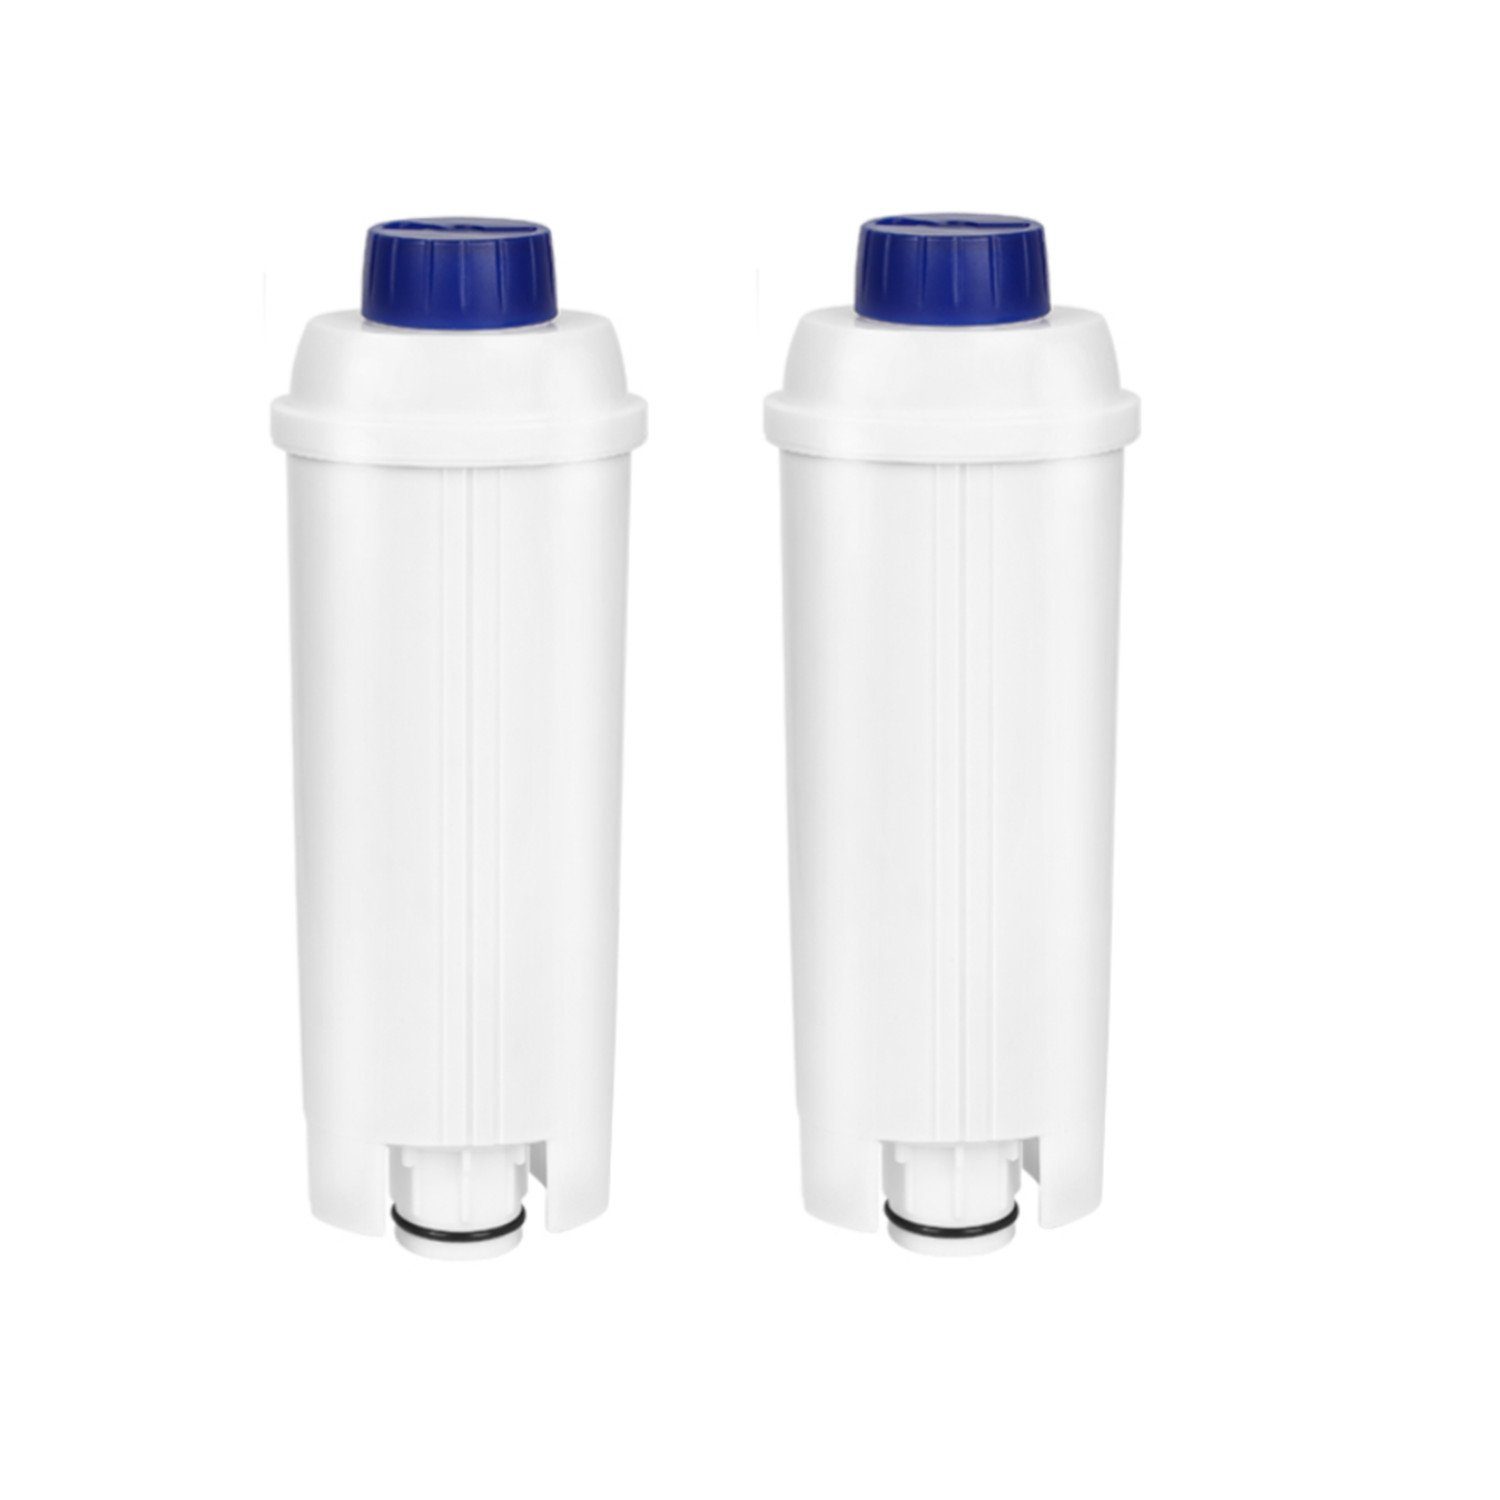 Clanmacy Wasserfilter 2-10x Wasserfilter für Delonghi kompatibel für DLSC002 ECAM ETAM Zubehör für EC800 EC680 für Delonghi DLSC002 mit Aktivkohle 60 Liter Wasser | Filter